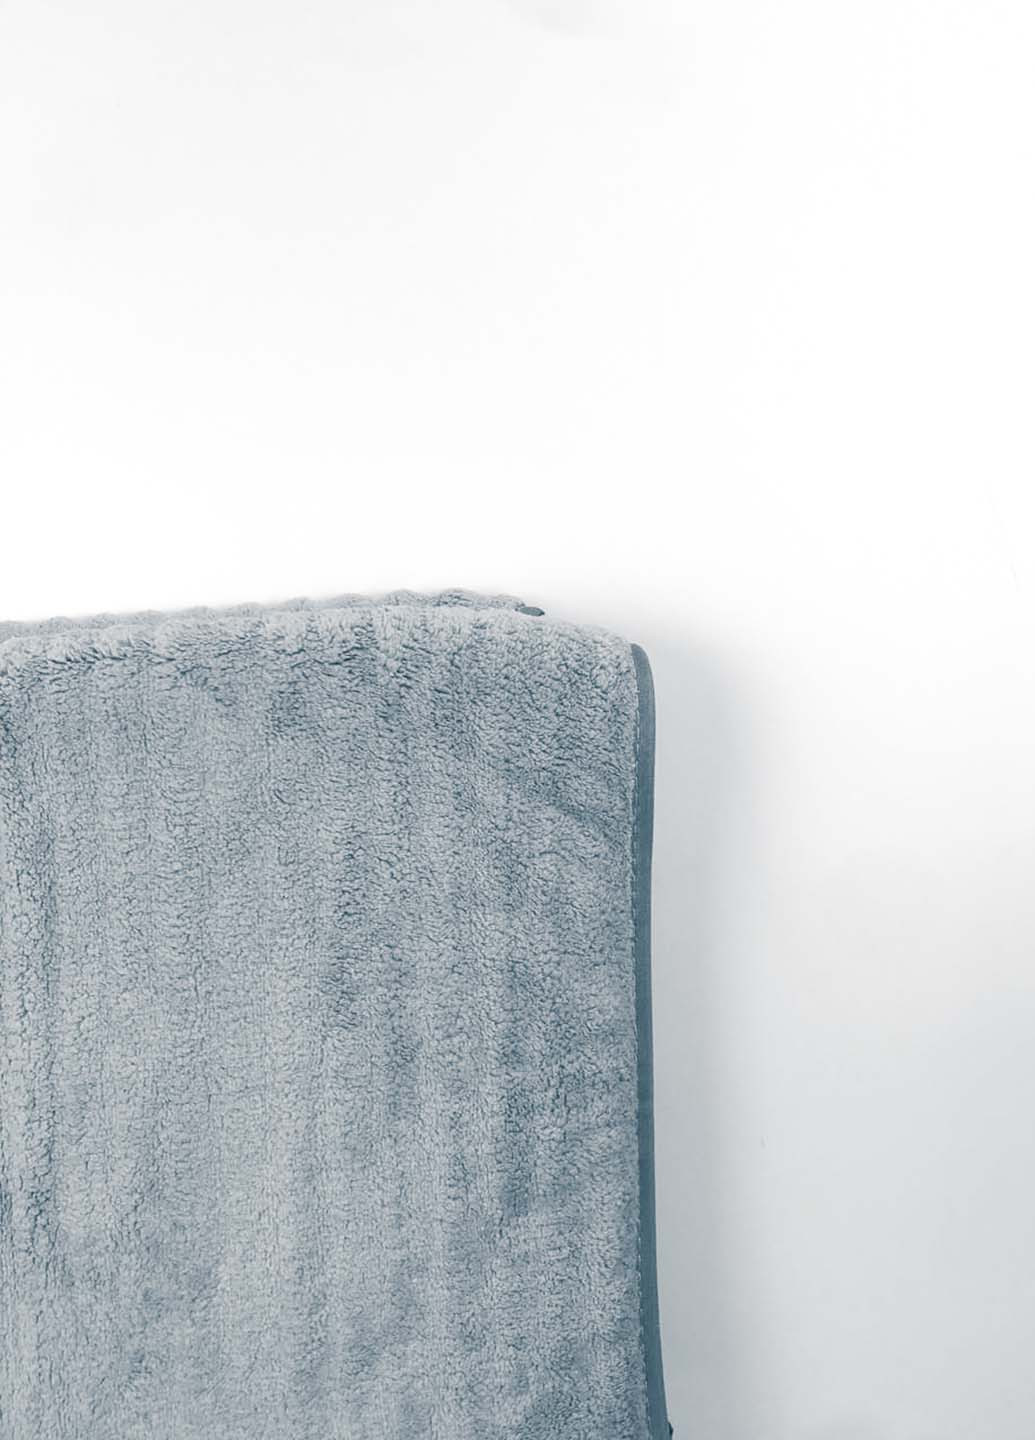 Homedec полотенце лицевое микрофибра 100х50 см однотонный голубой производство - Турция